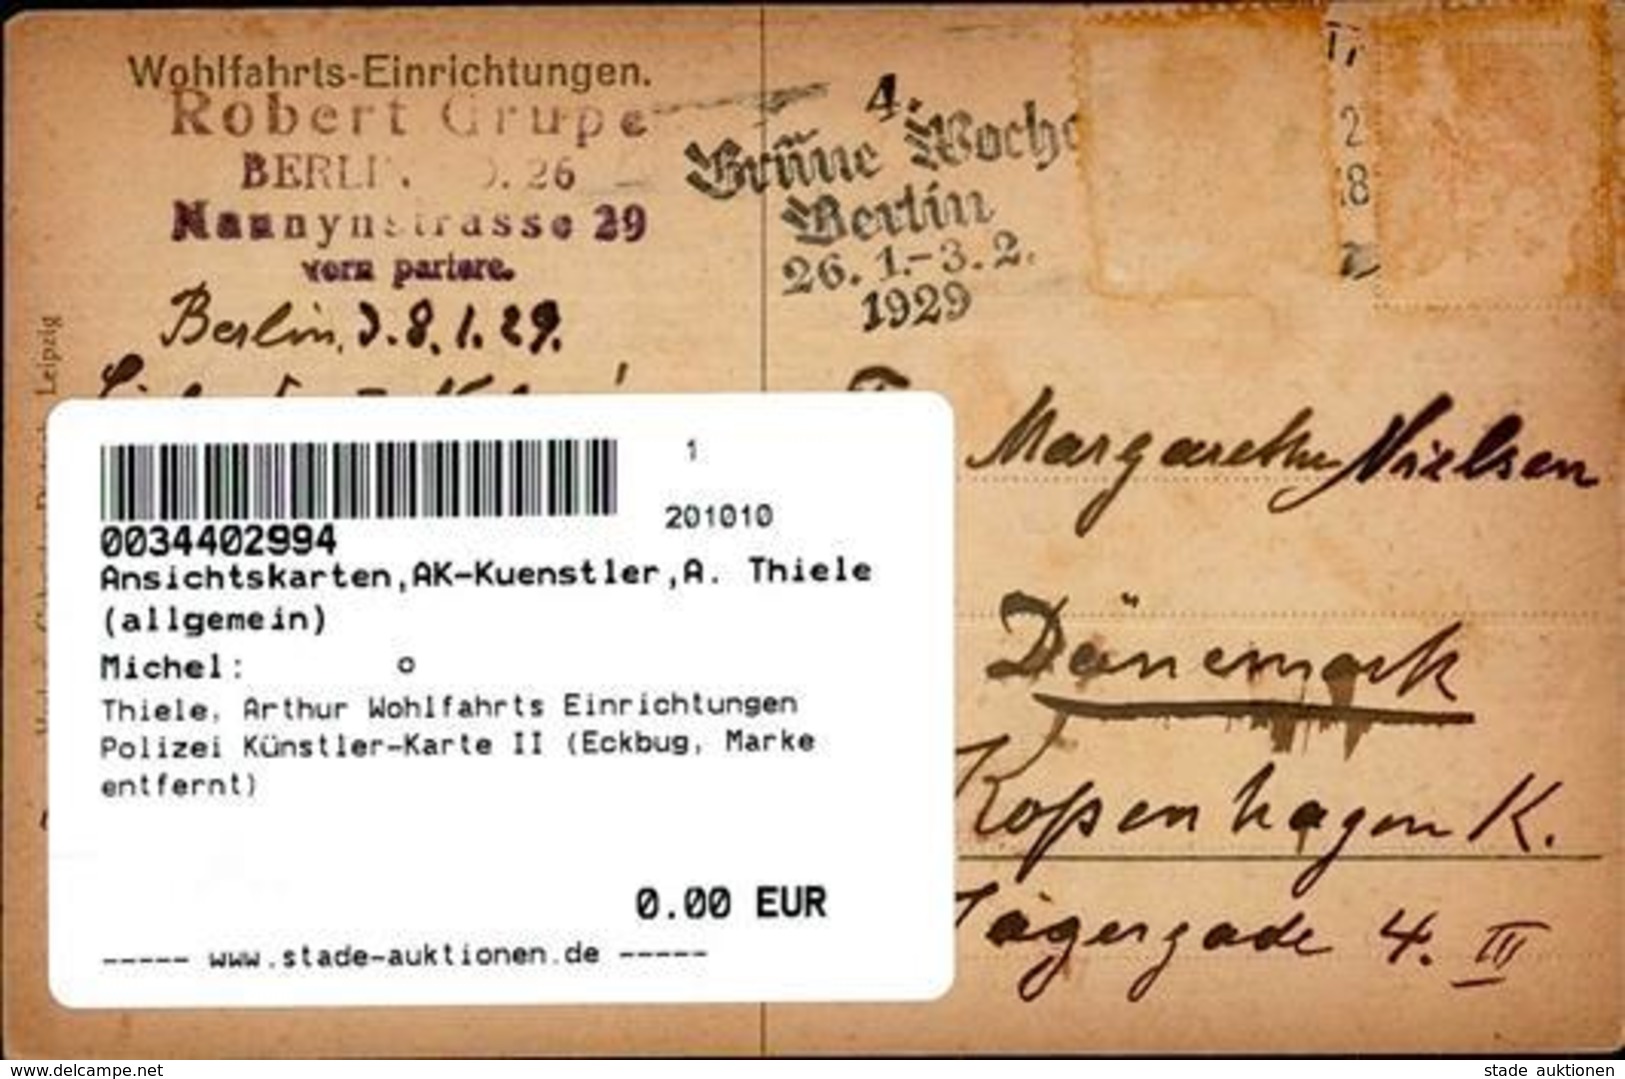 Thiele, Arthur Wohlfahrts Einrichtungen Polizei Künstler-Karte II (Eckbug, Marke Entfernt) - Thiele, Arthur